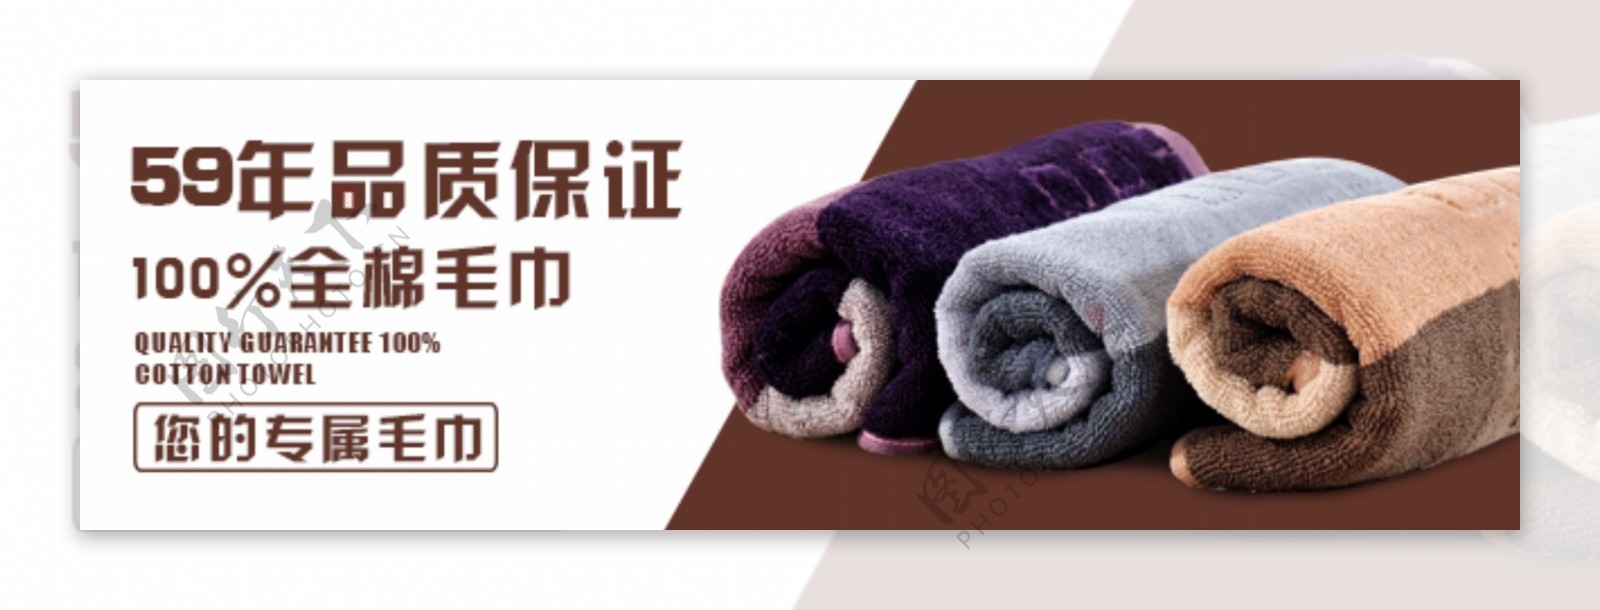 毛巾广告图